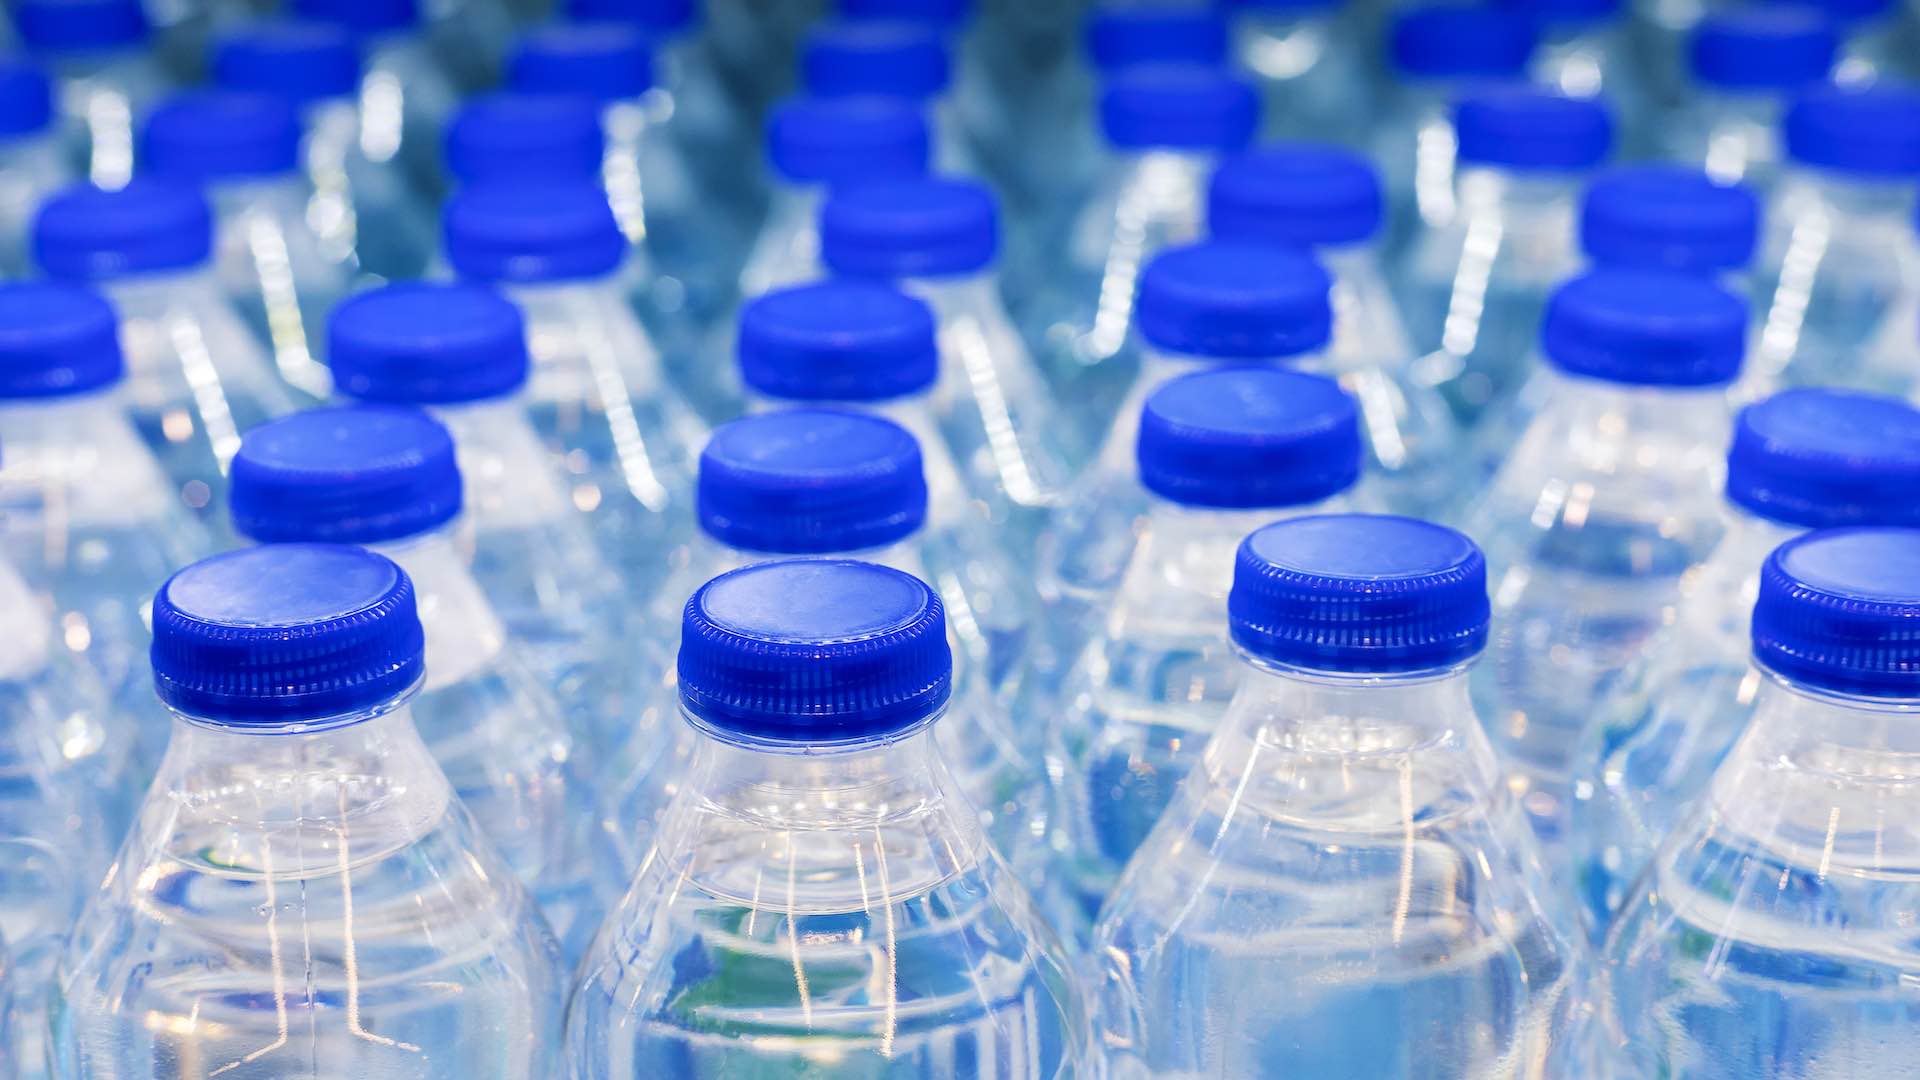 अलीकडील नॅनोप्लास्टिक निष्कर्षांनंतर बाटलीबंद पाण्याची सुरक्षा तपासणी अंतर्गत